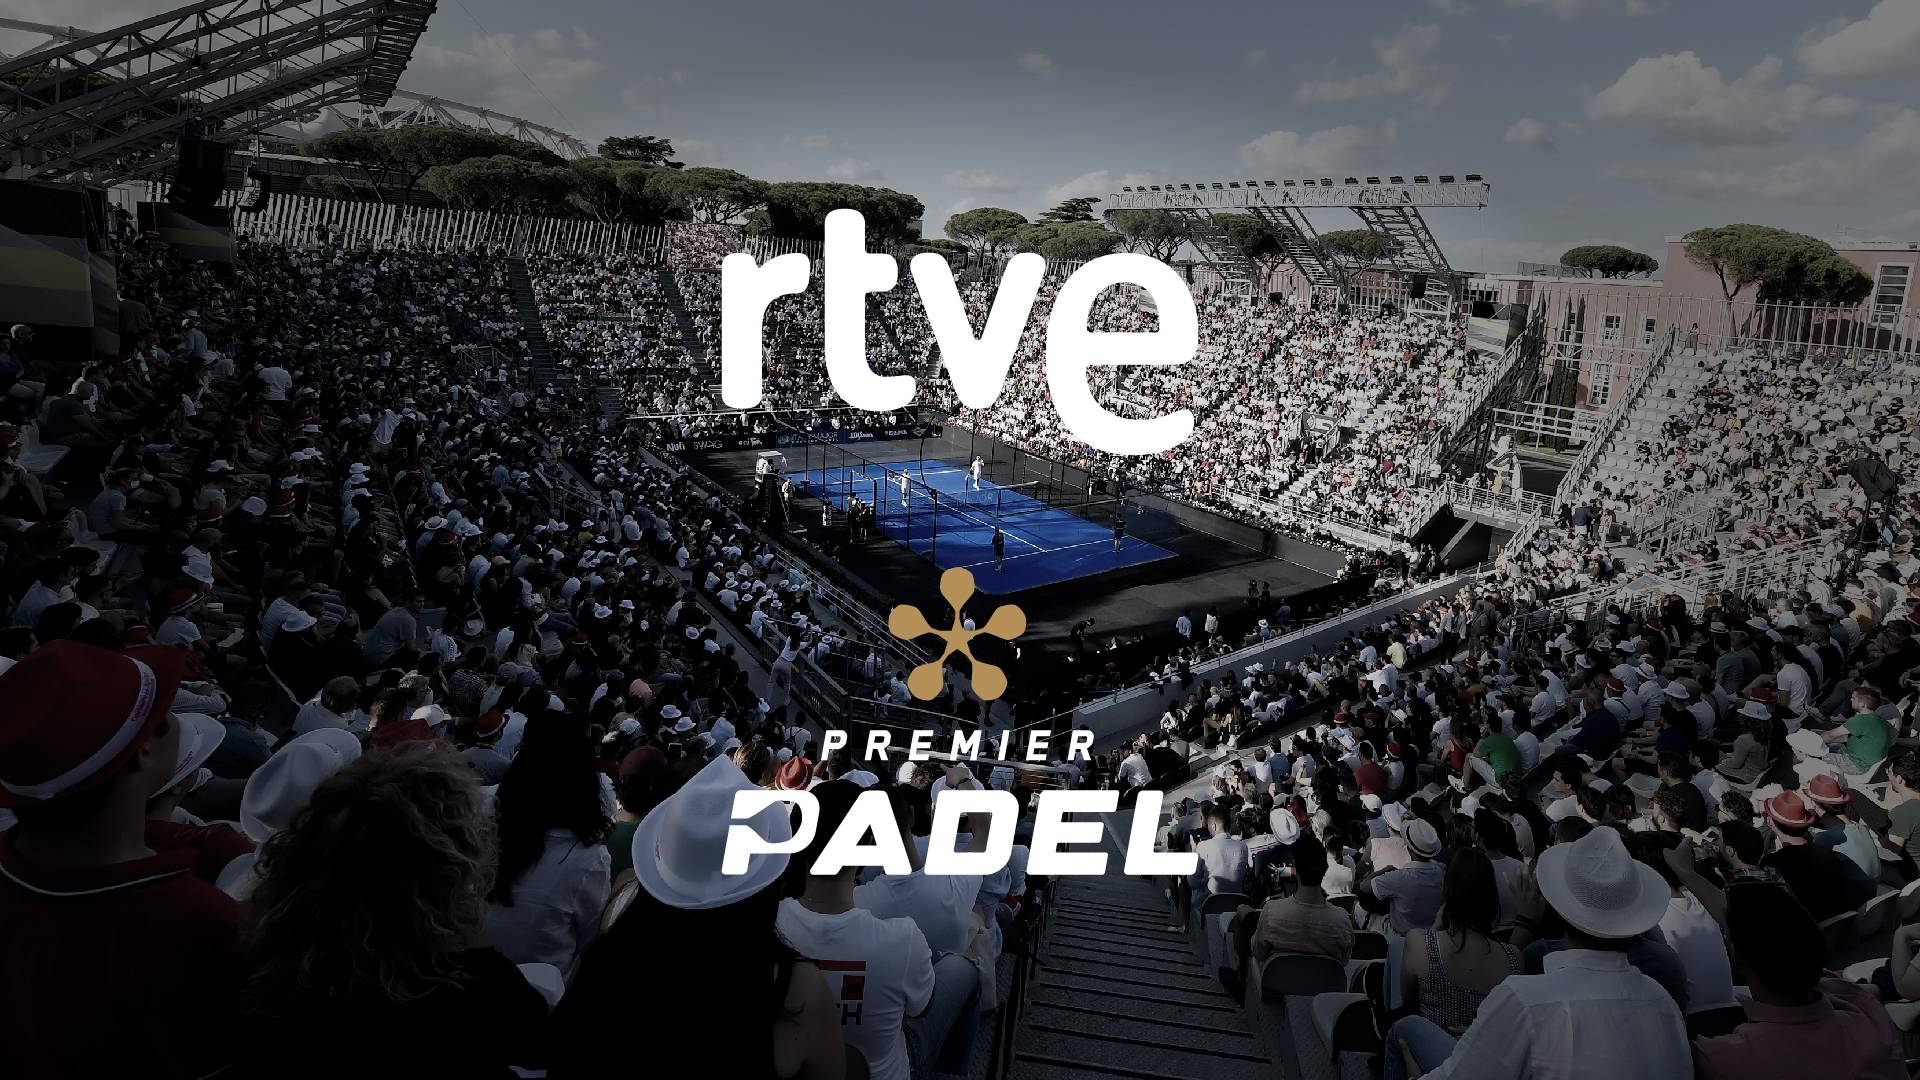 TVE retransmitirá los torneos del circuito Premier Padel en España